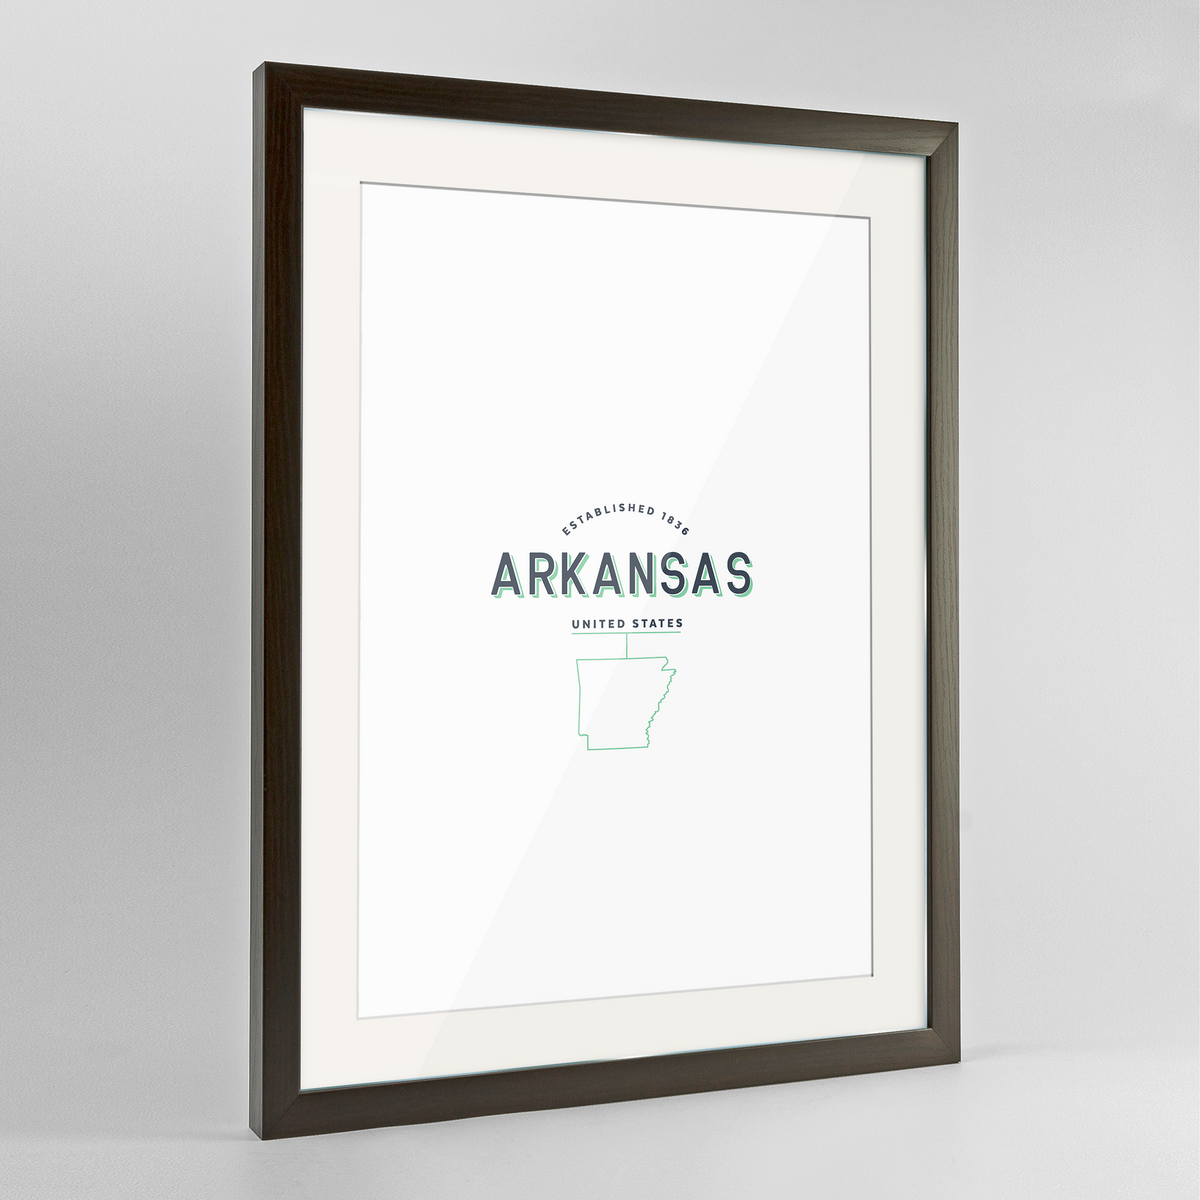 Arkansas Word Art Frame Print - State Line